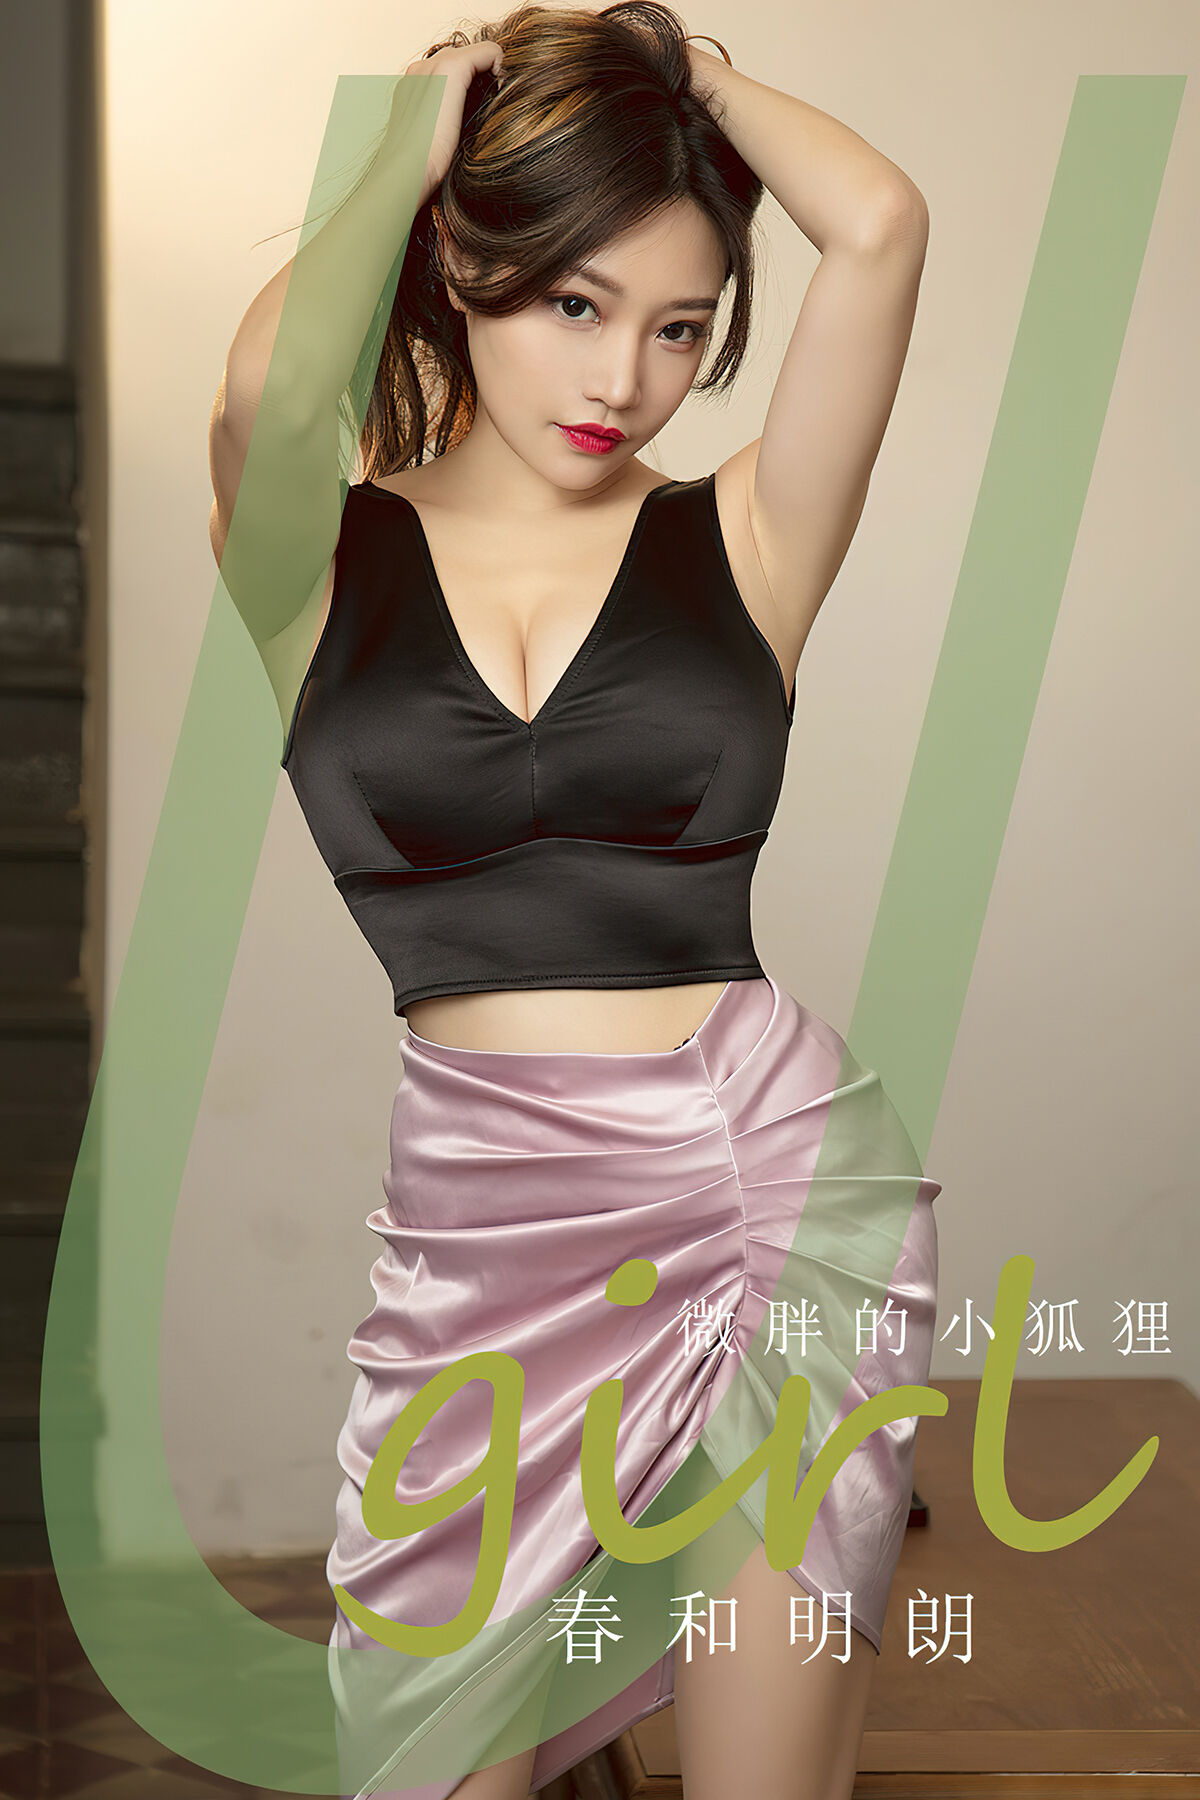 View - Ugirls App NO.2792 Wei Pang De Xiao Hu Li - 